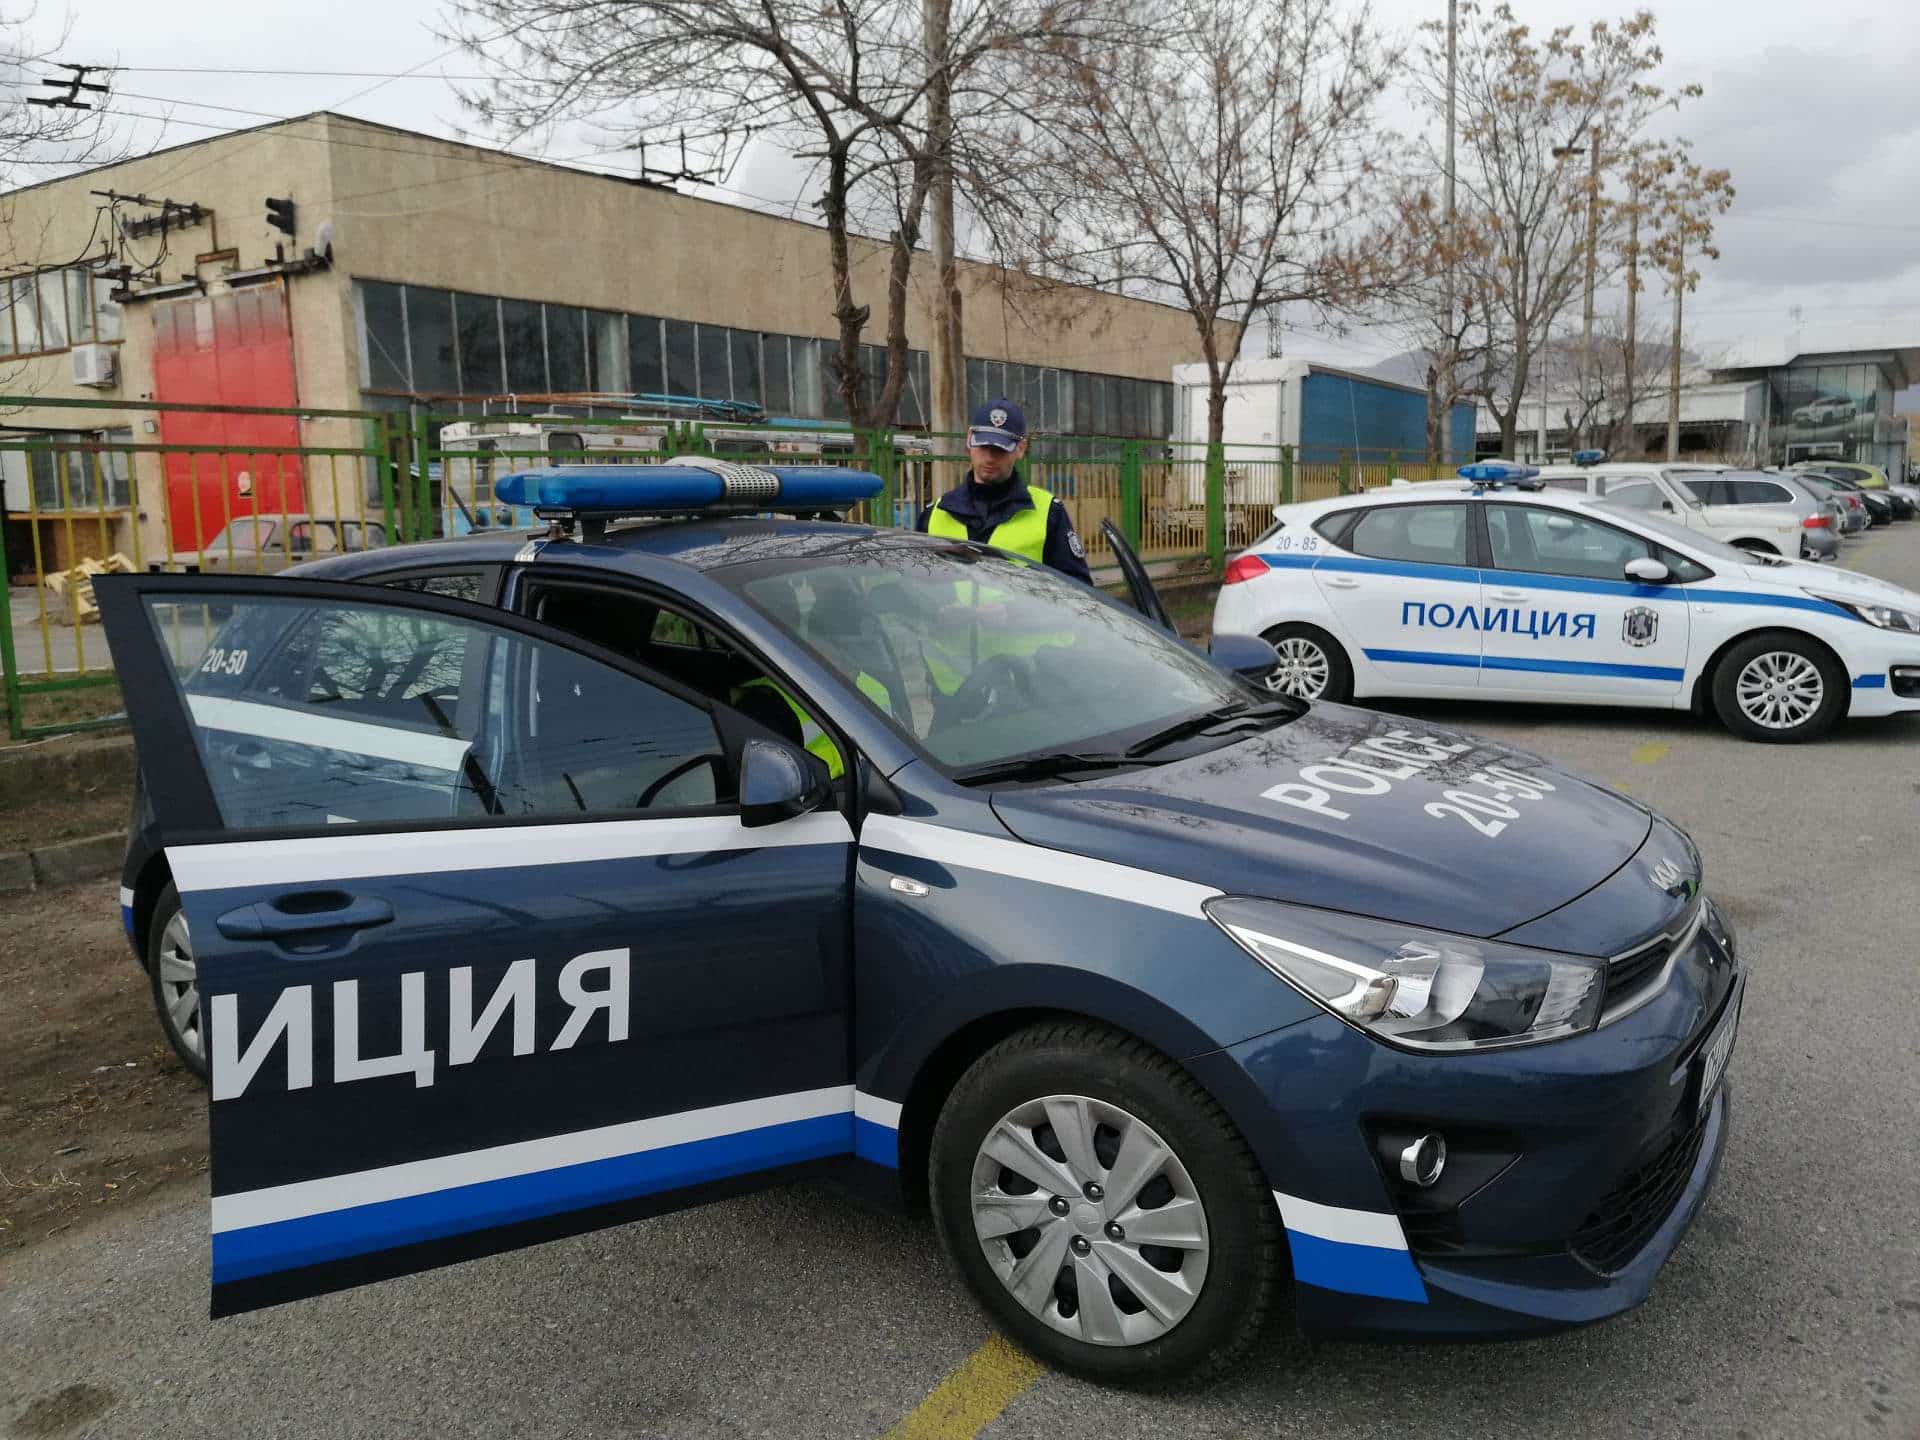 Мащабна полицейска операция е била проведена в Сливенско При нея